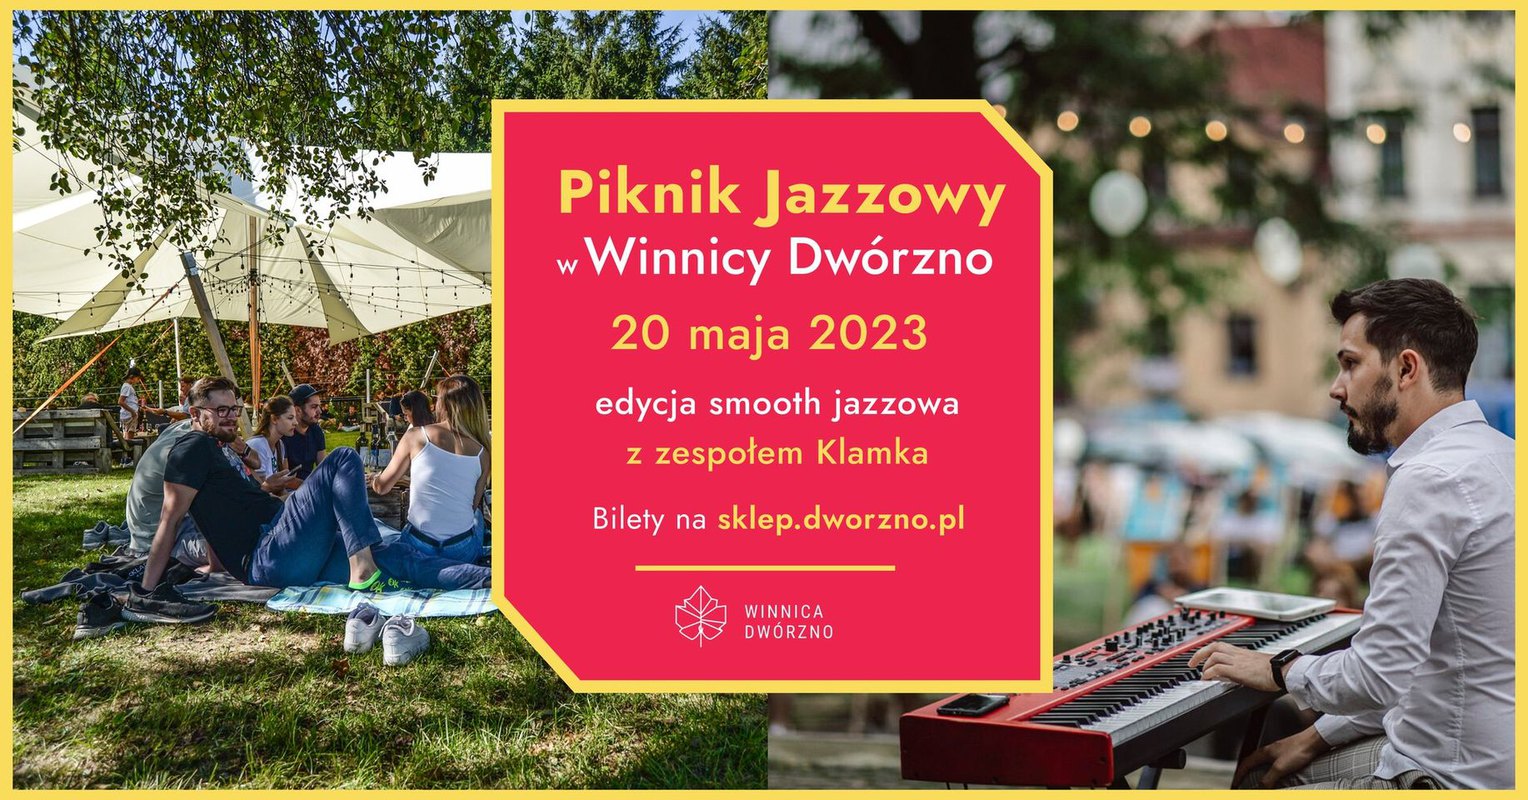 Piknik Jazzowy w Winnicy Dwórzno 20.05 / Klamka - edycja smooth jazzowa